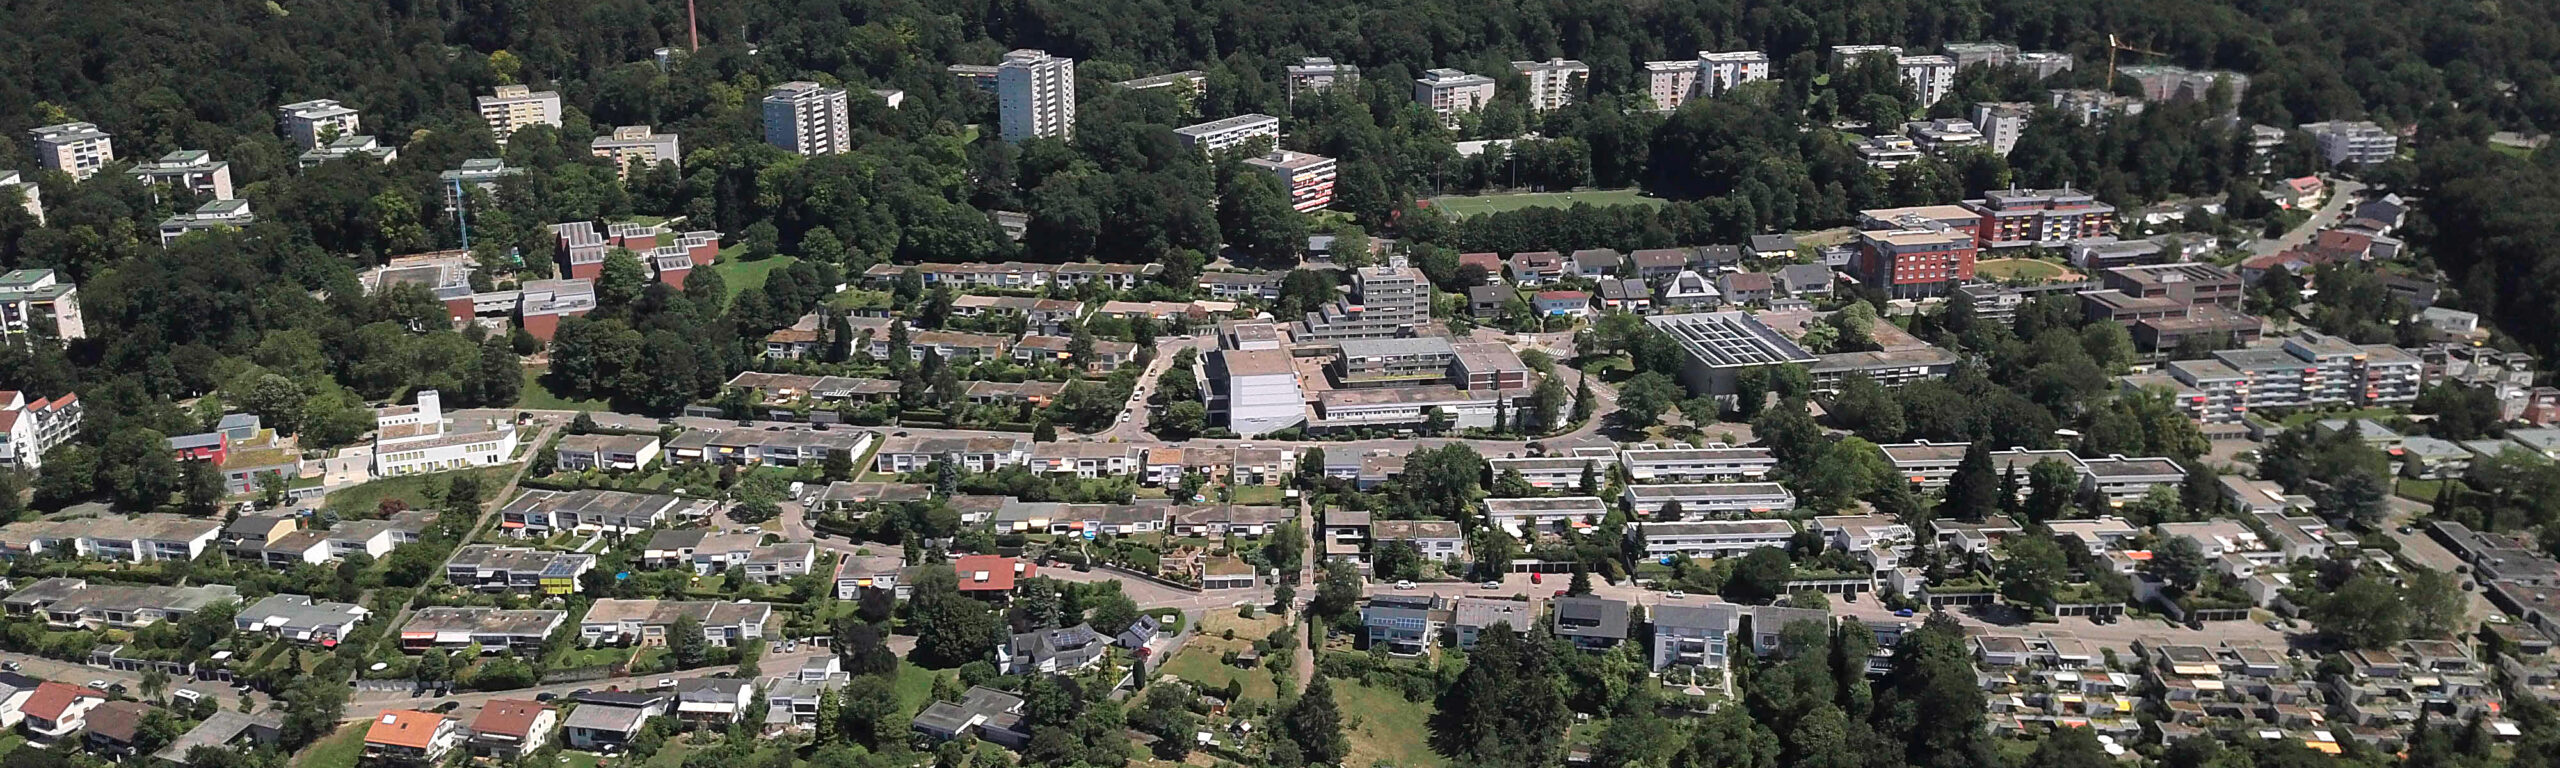 ein Drohnenbild vom gesamten Stadtteil, vom Westen her gesehen. Man erkennt die Hochhäuser am Waldrand und auf dem Feld davor die Ein- und Mehrfamilenhäuser